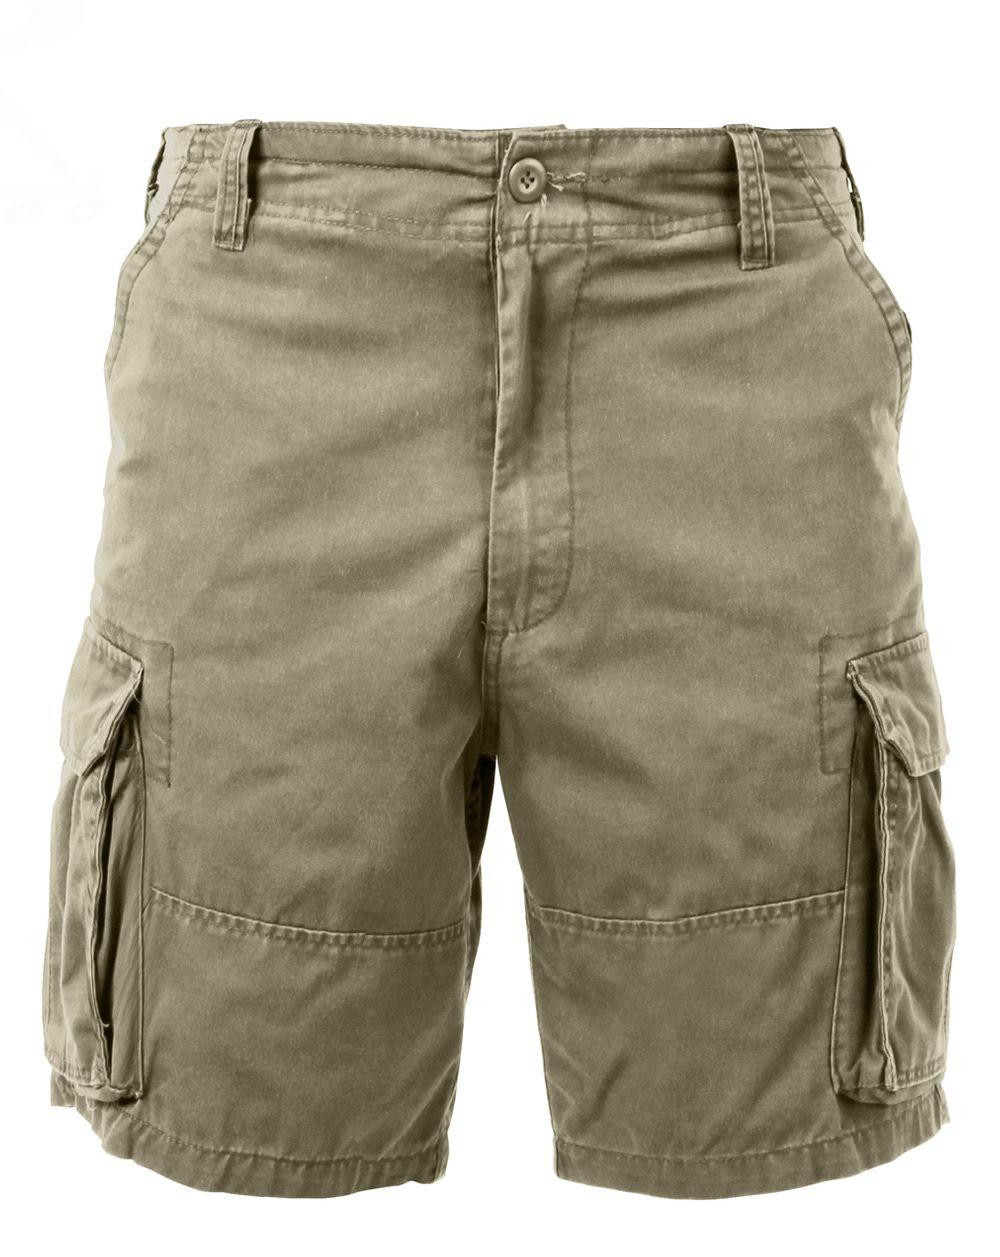 Rothco Cargo shorts (Khaki, 2XL)